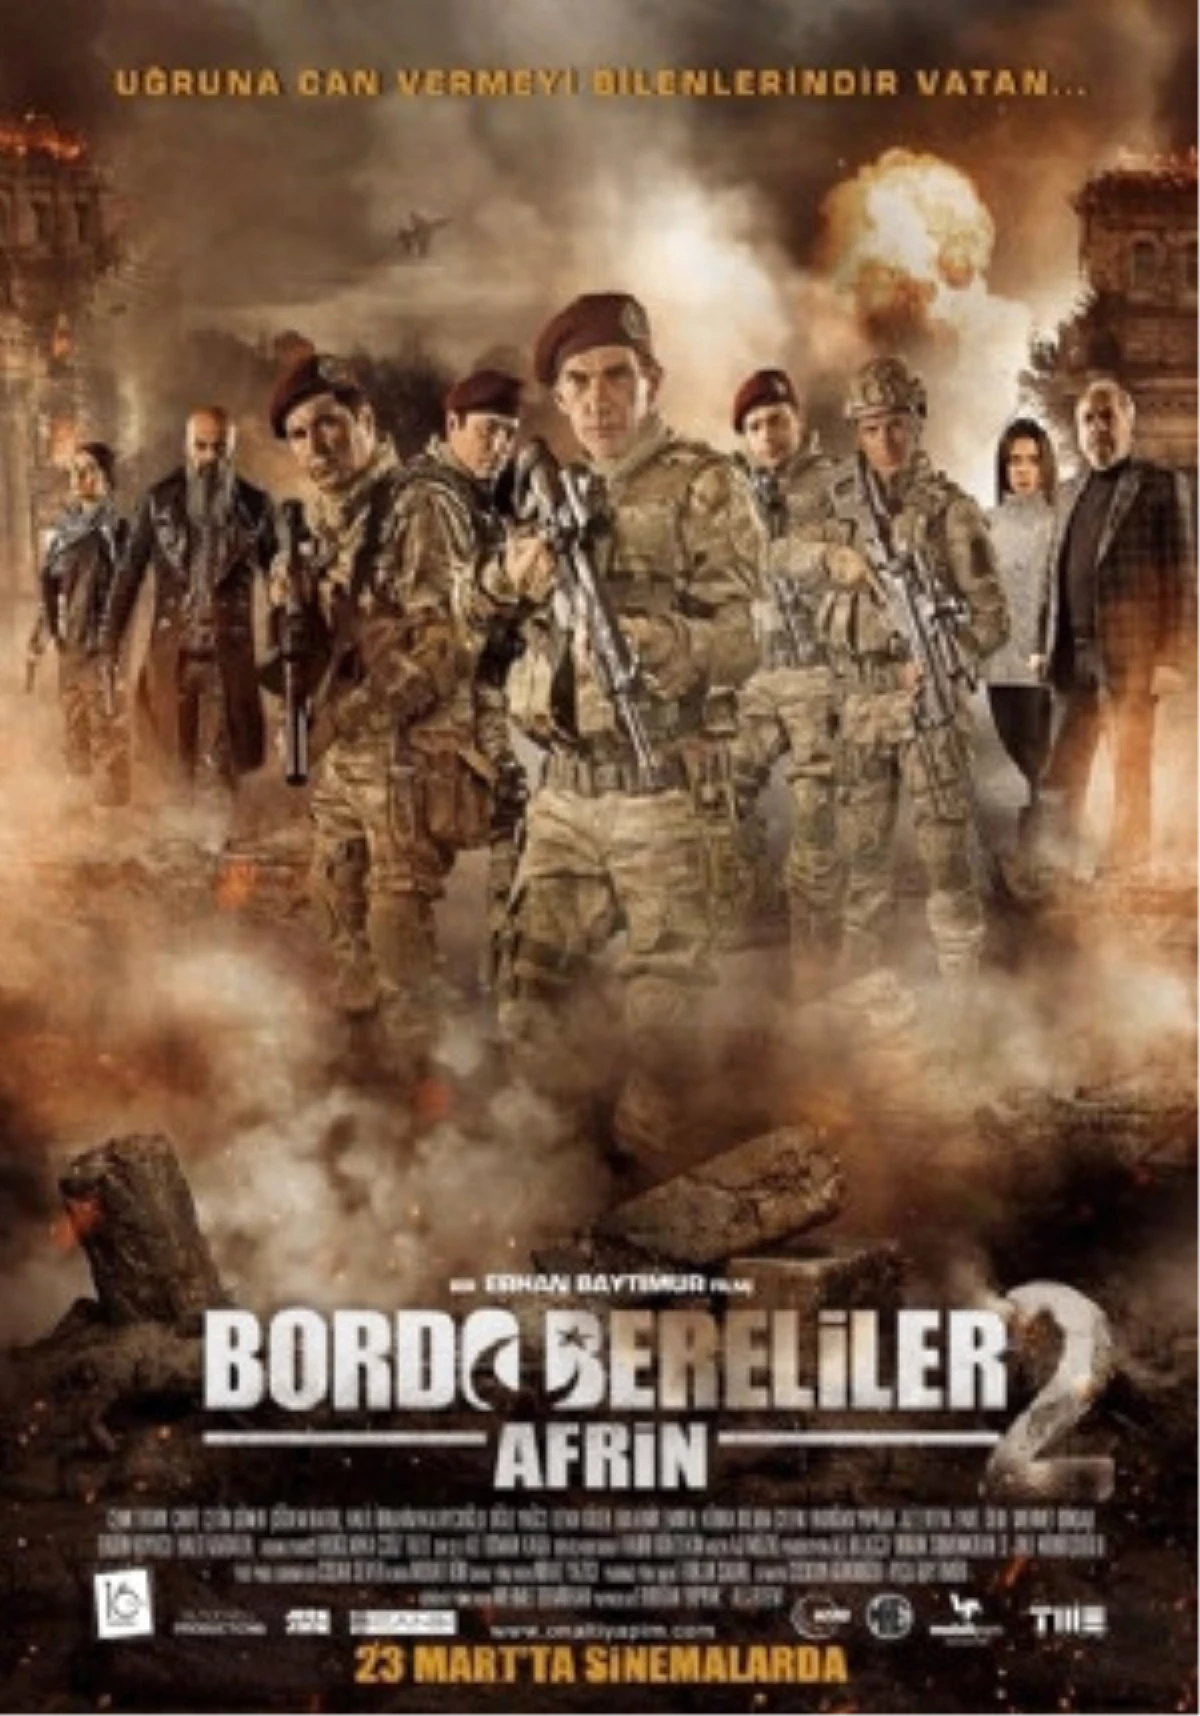 Bordo Bereliler Afrin Filmi